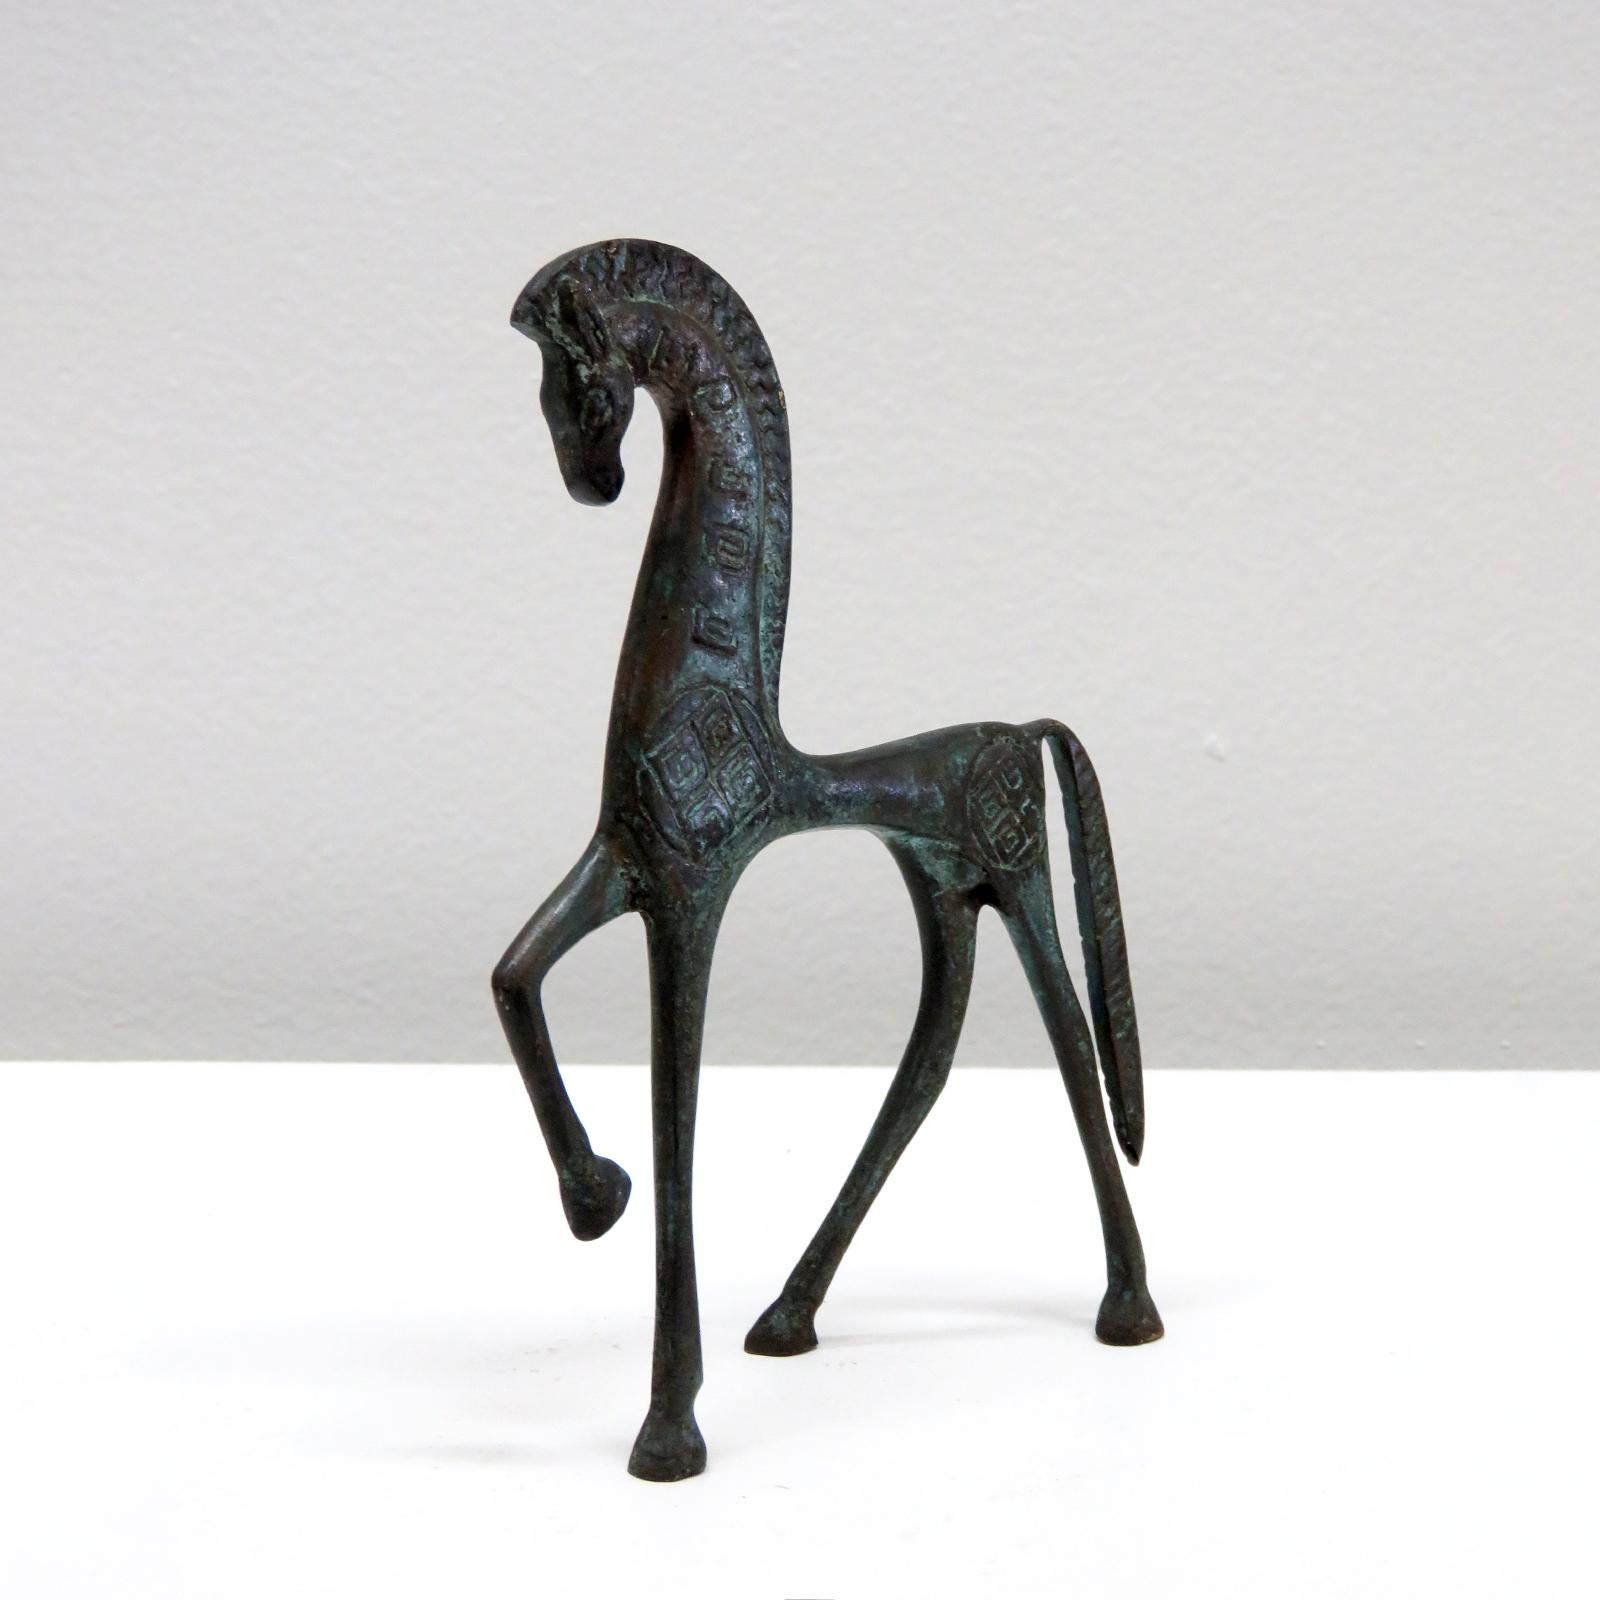 Maravillosa escultura en bronce a pequeña escala de un caballo etrusco al estilo de Frederick Weinberg, hacia la década de 1960. Minimalista y moderno, con impresionantes grabados detallados a lo largo del cuerpo del caballo.